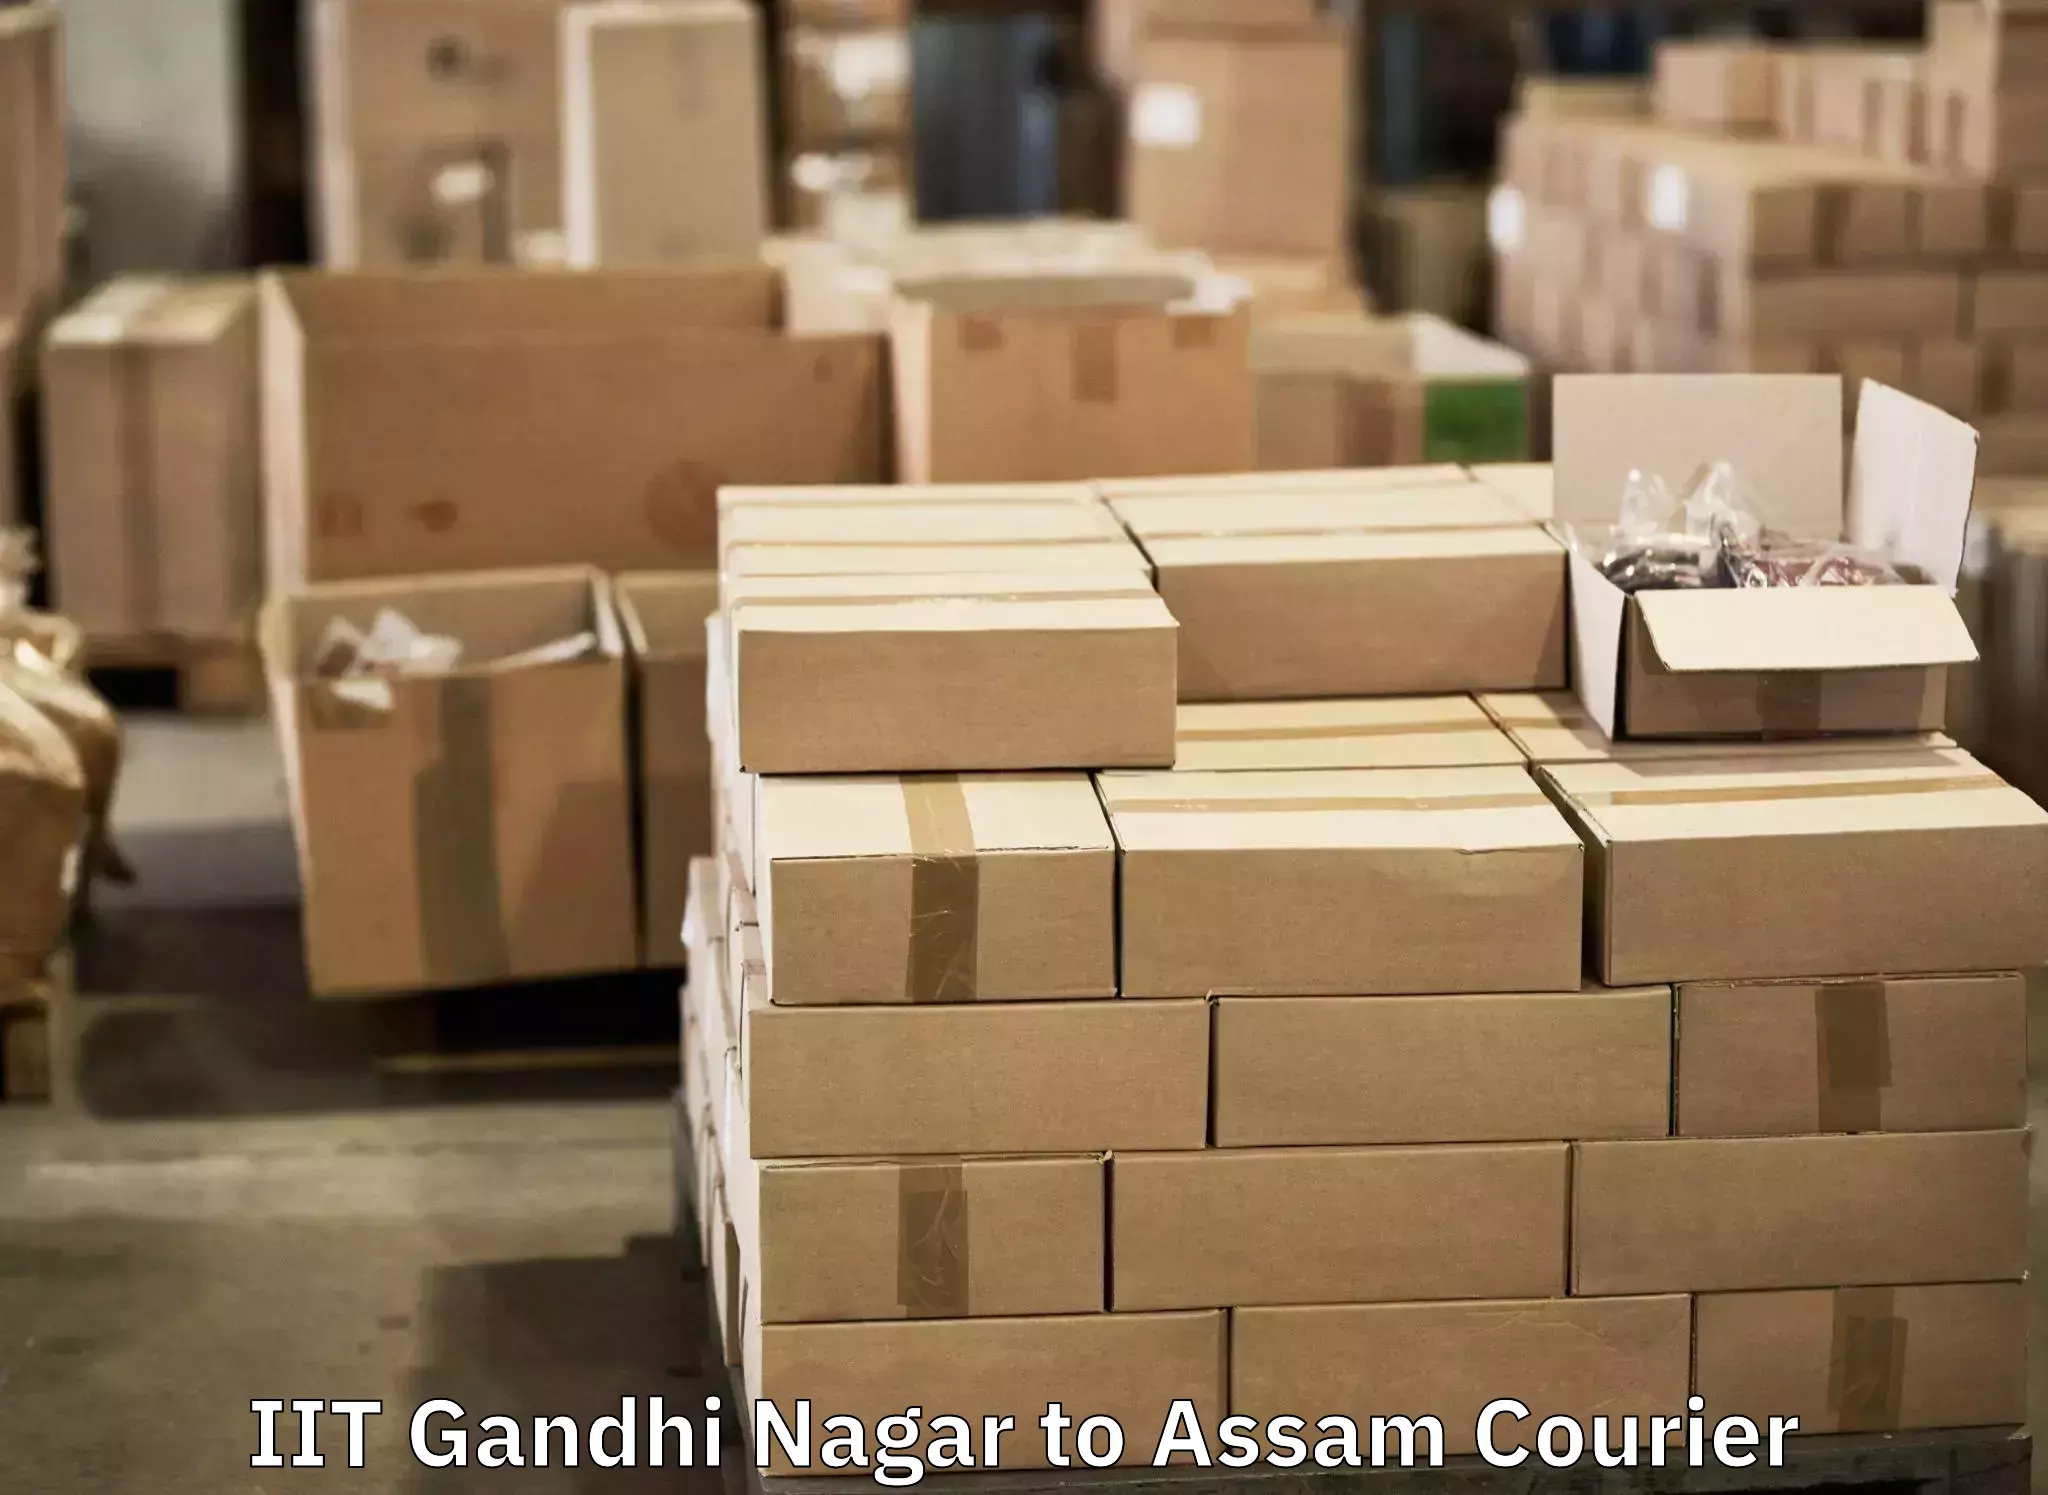 Online luggage shipping booking IIT Gandhi Nagar to Paneri Kamrup